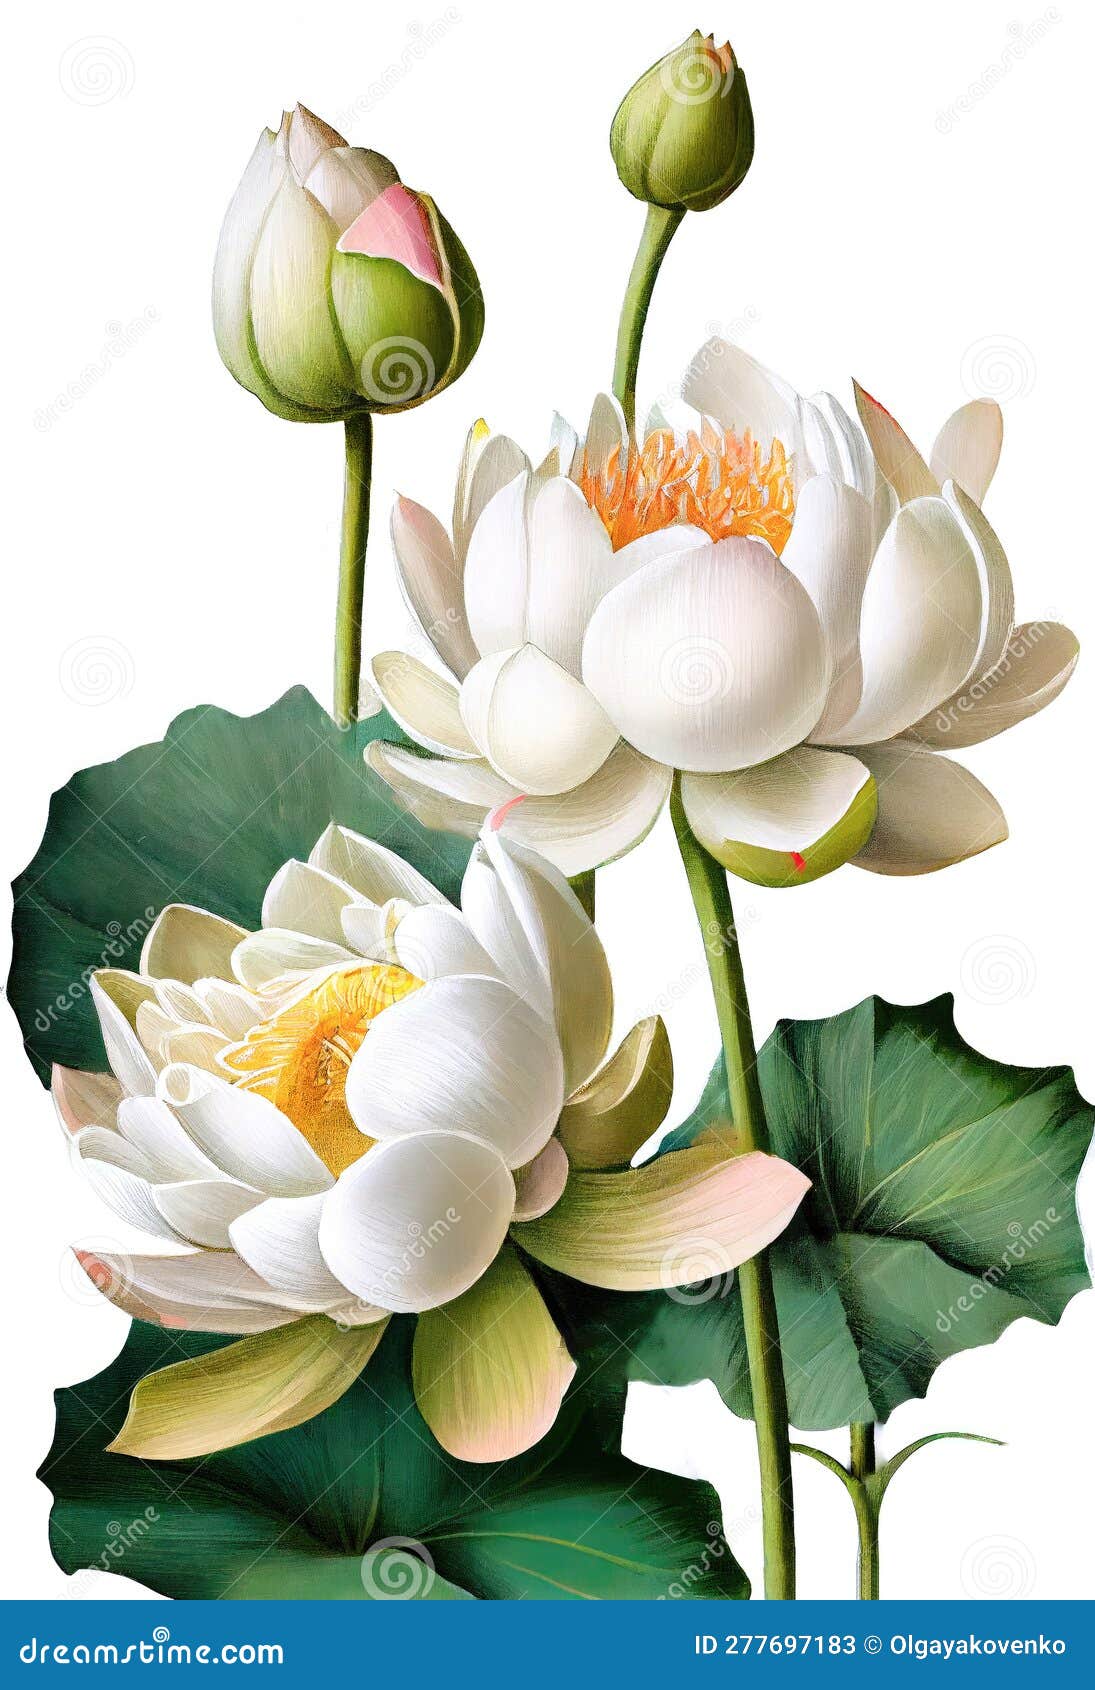 Dibujo De Flor De Loto Blanco Aislado En Fondo Blanco. Generación De Ai Con  Estilo De Mano De Acuarela Imagen de archivo - Imagen de mano, flora:  277697183